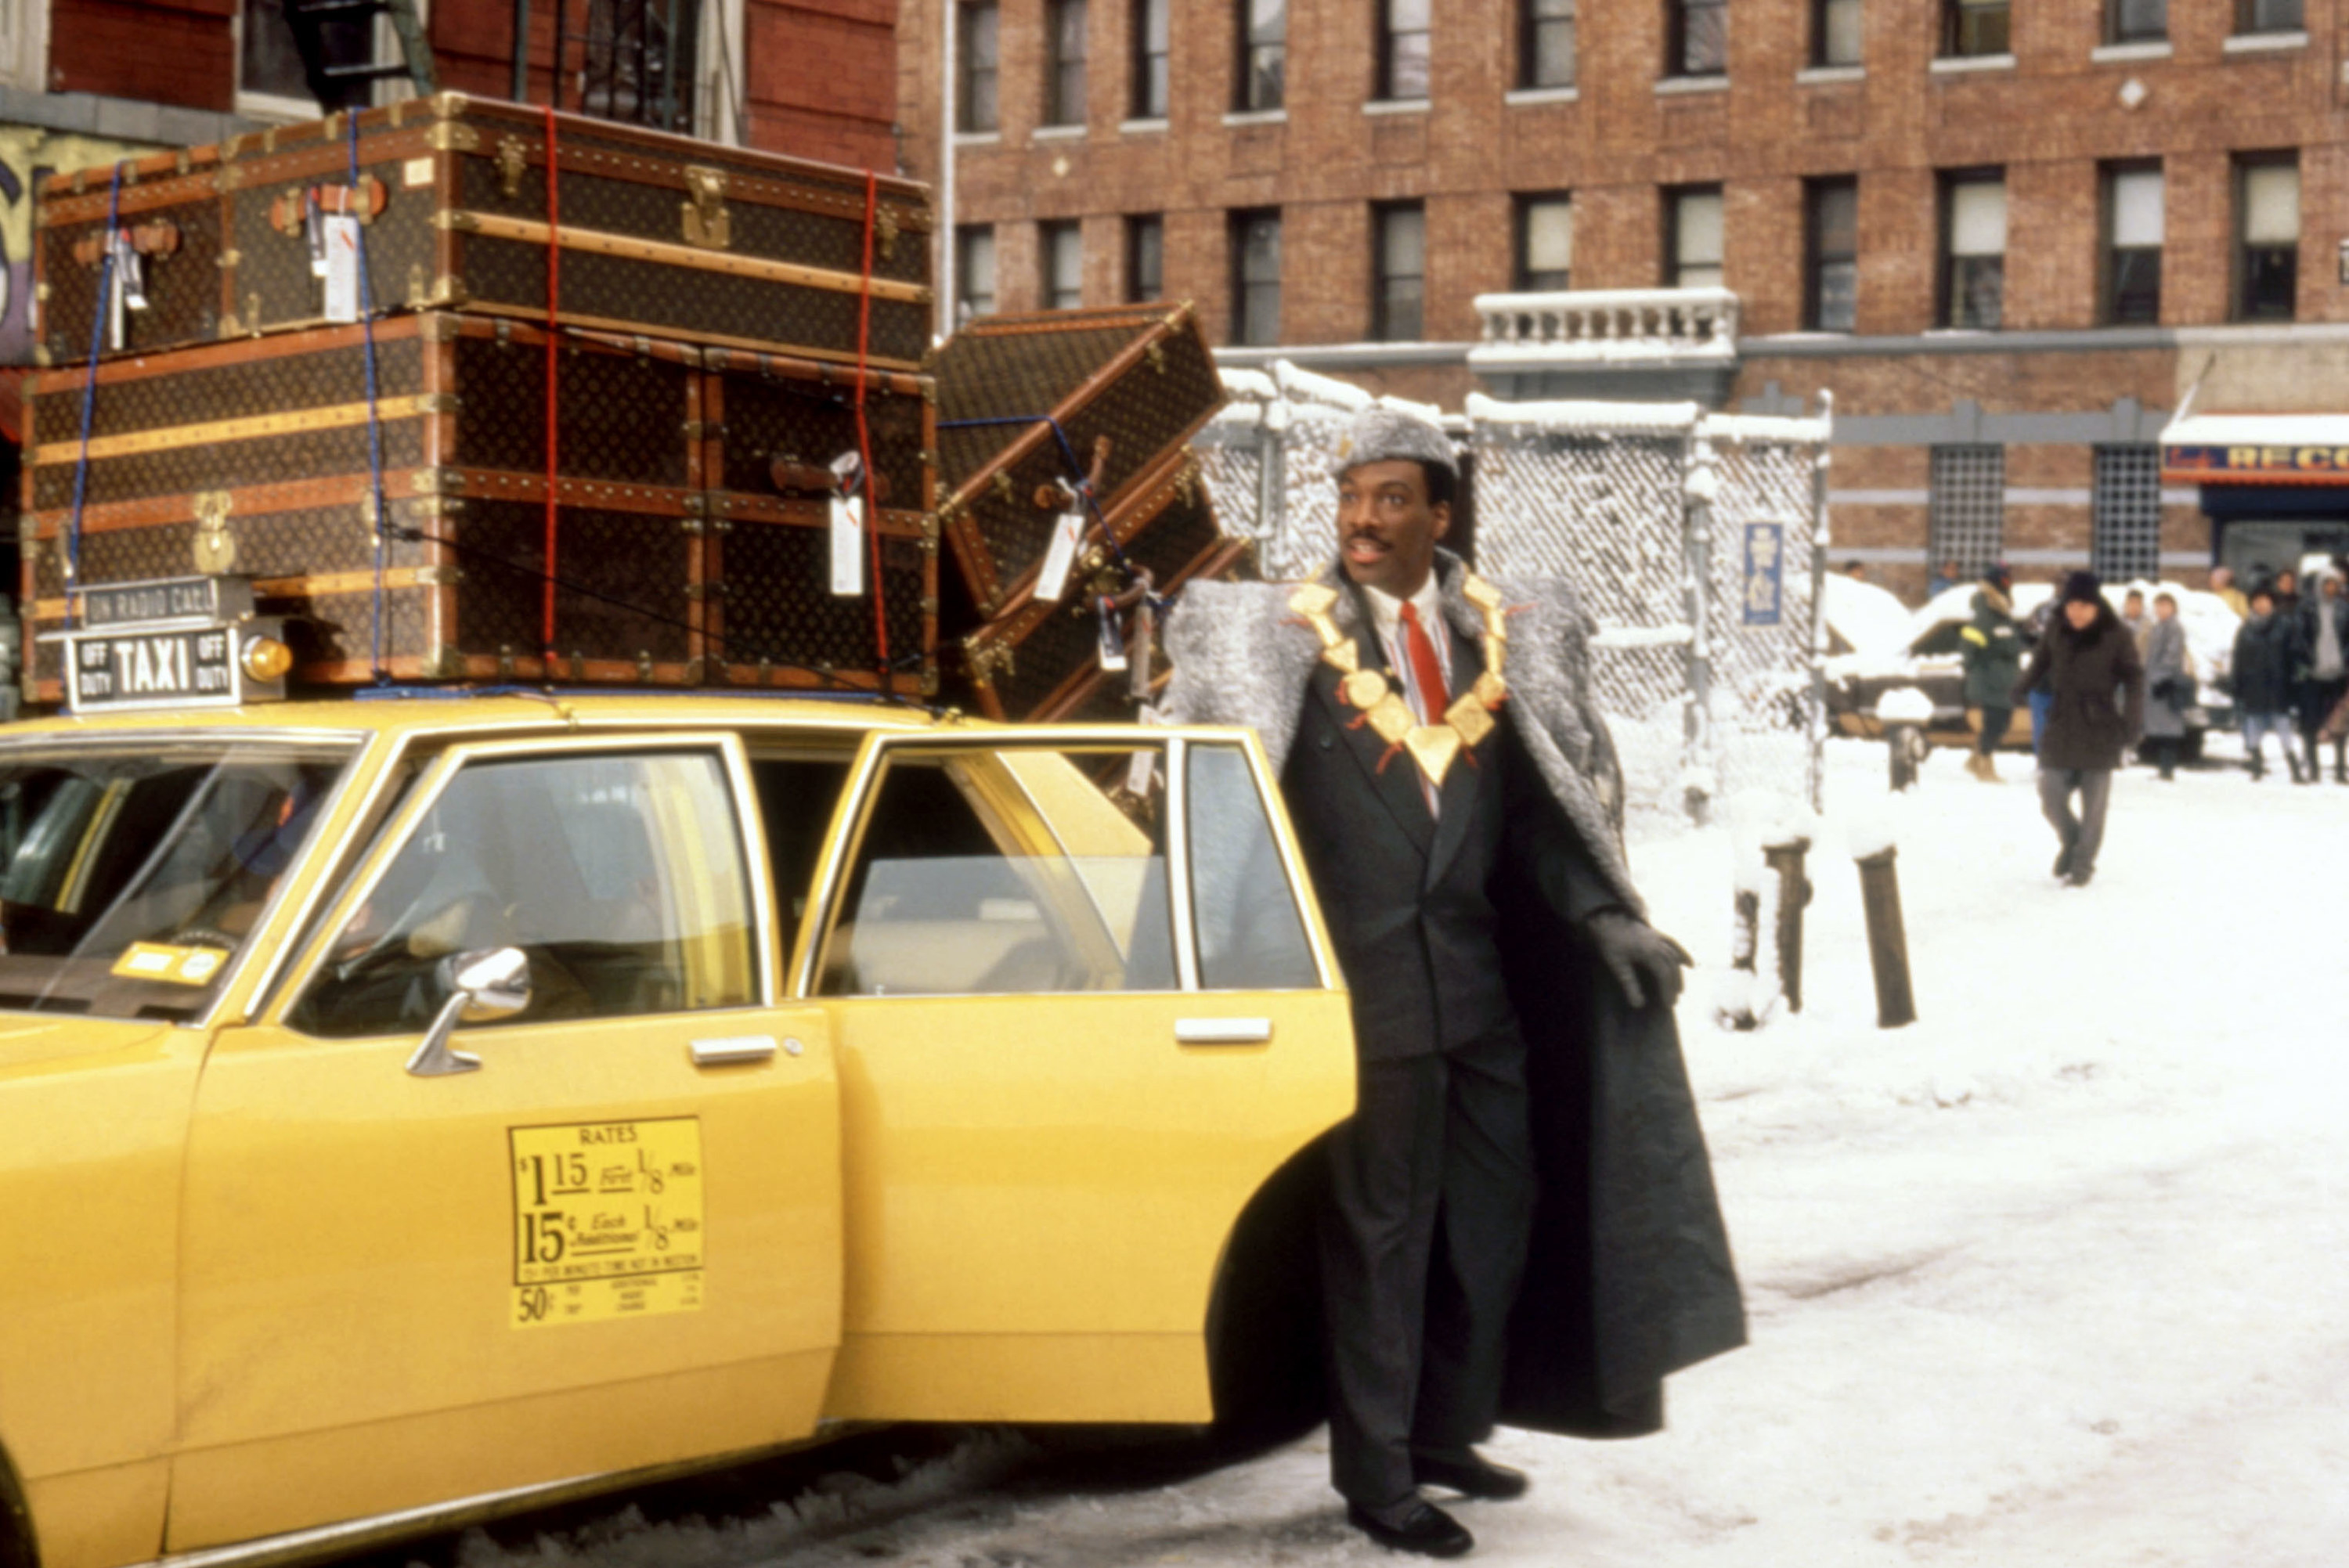 A man in royal garb exits a taxi cab